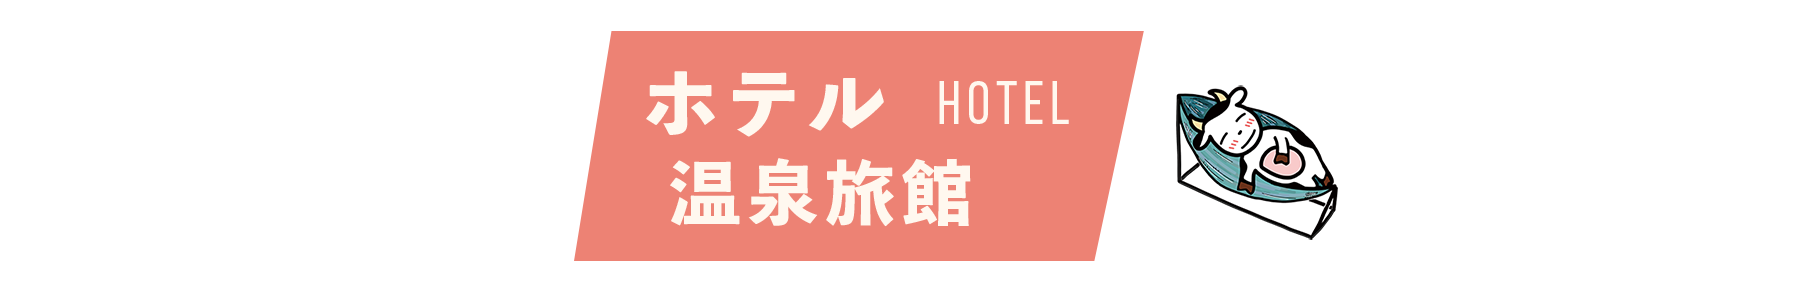 ホテル/温泉旅館